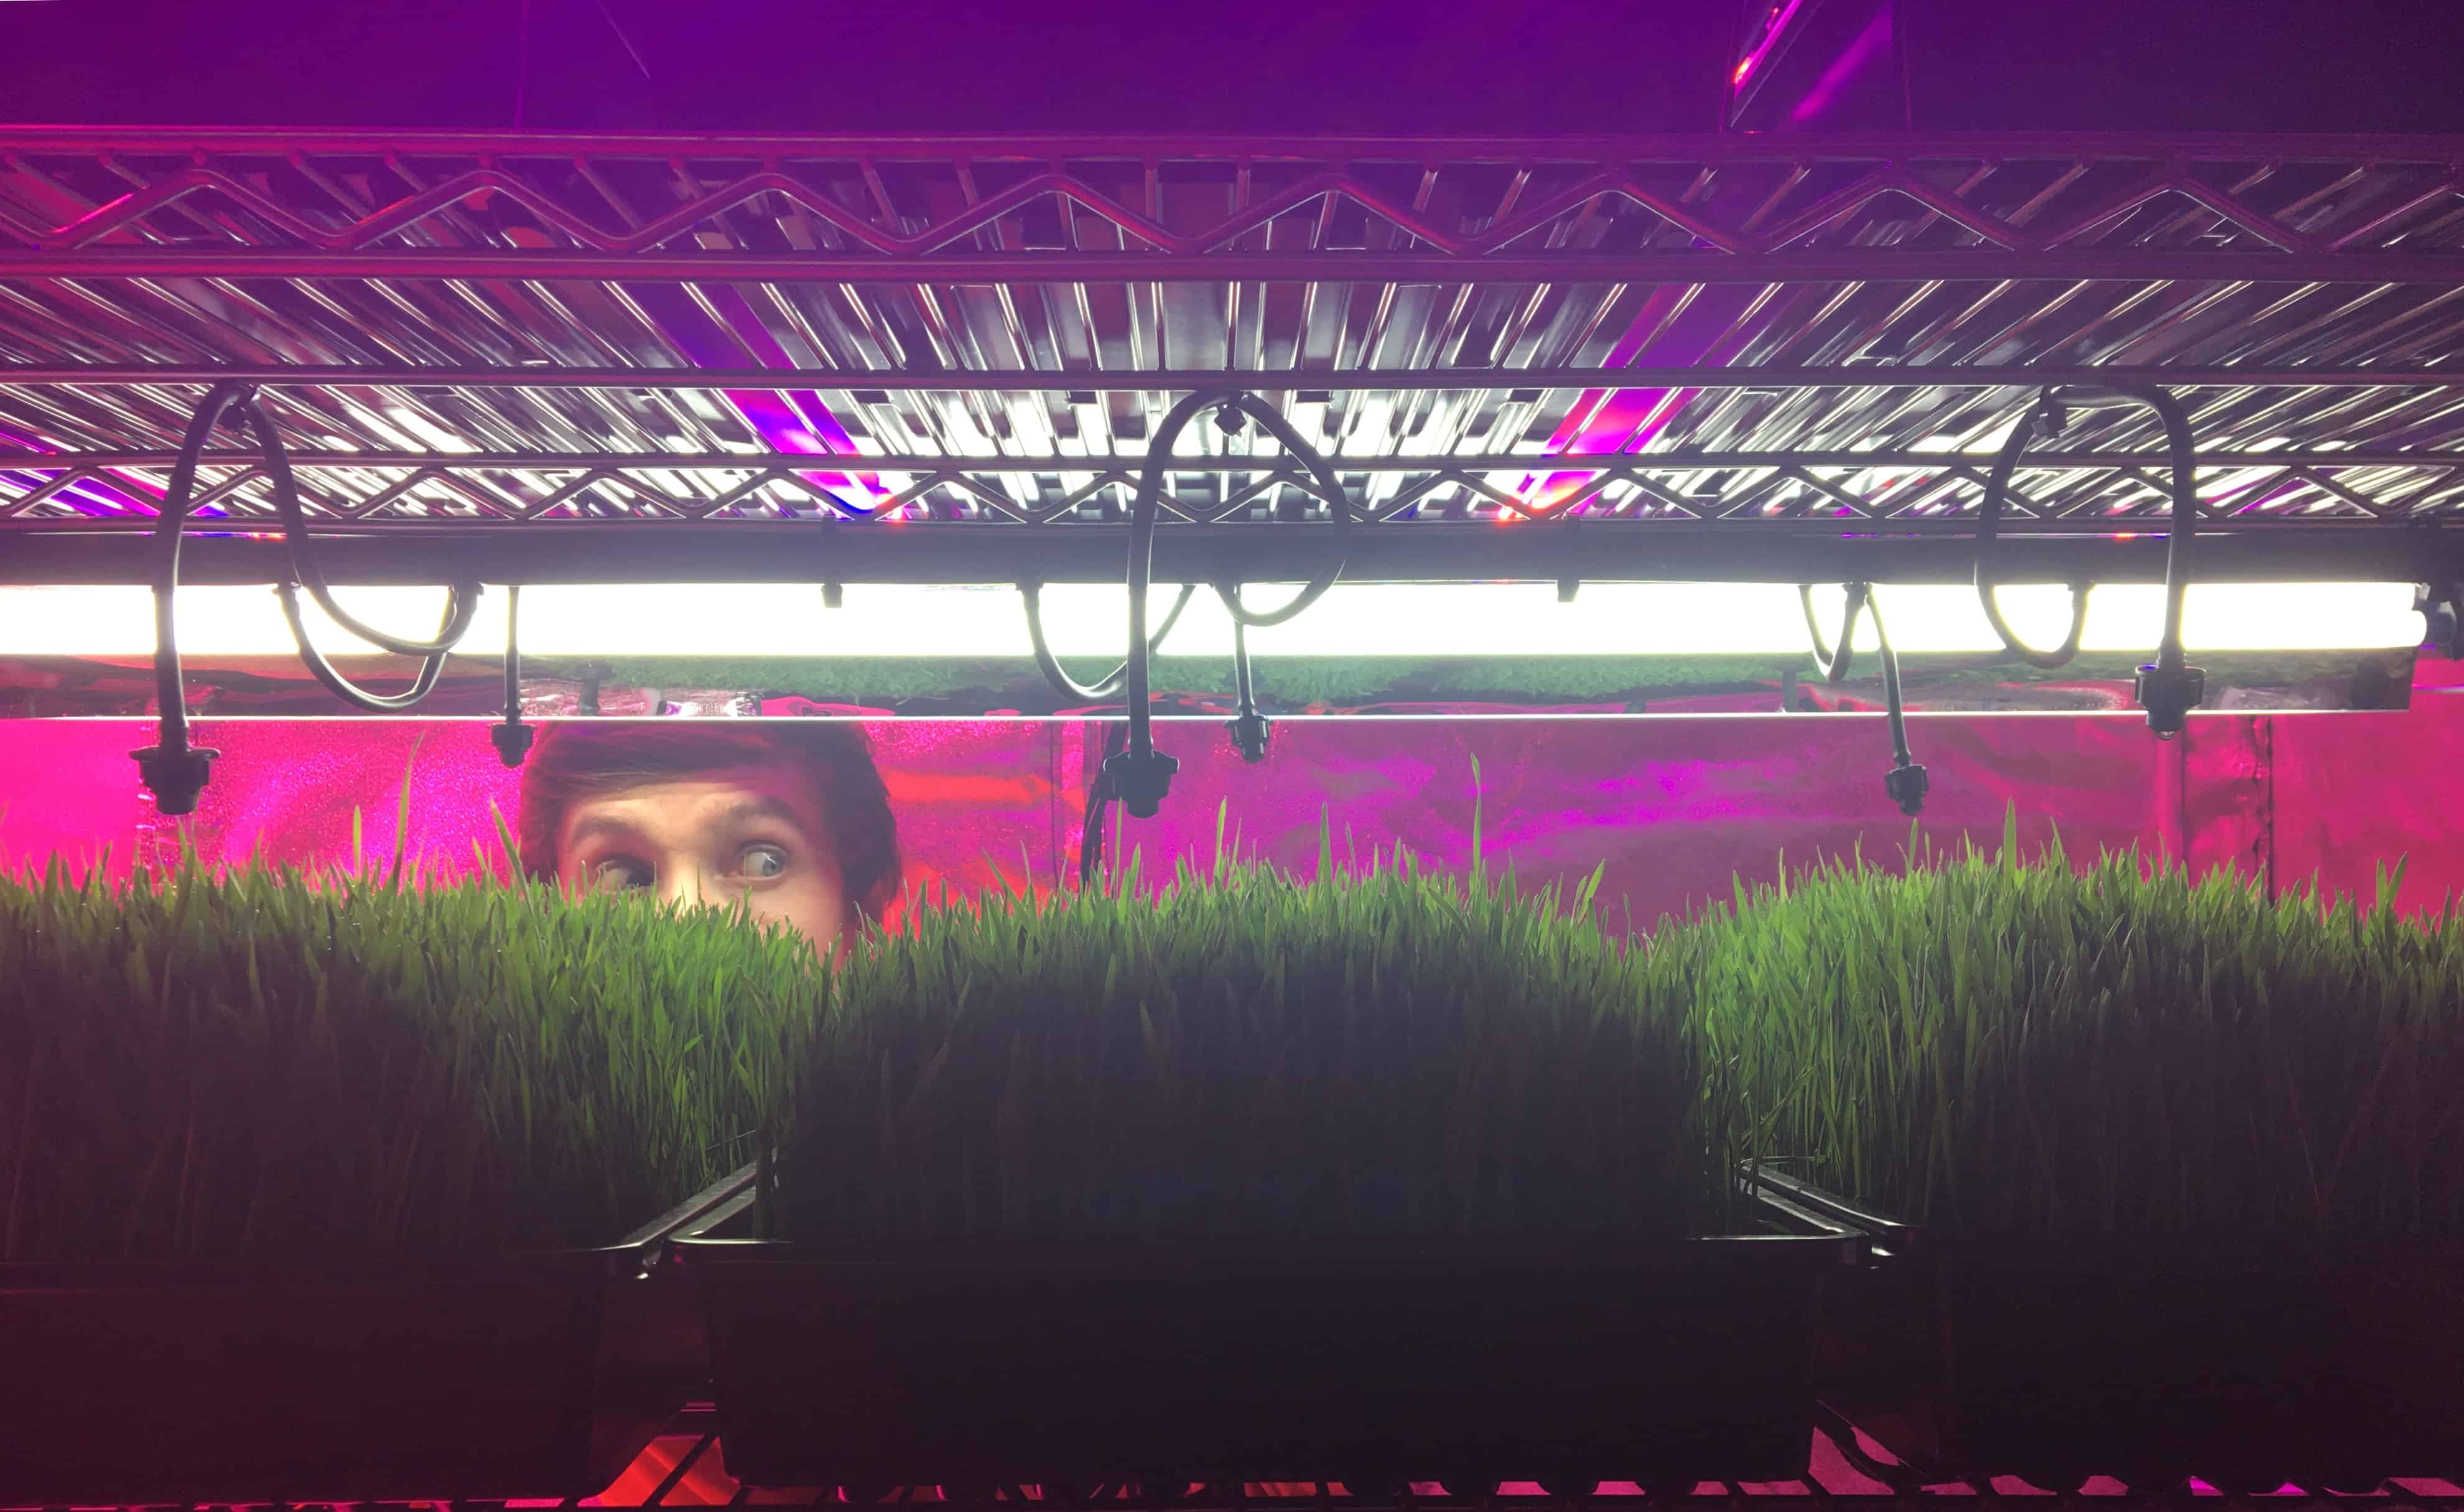 How To Grow Wheatgrass